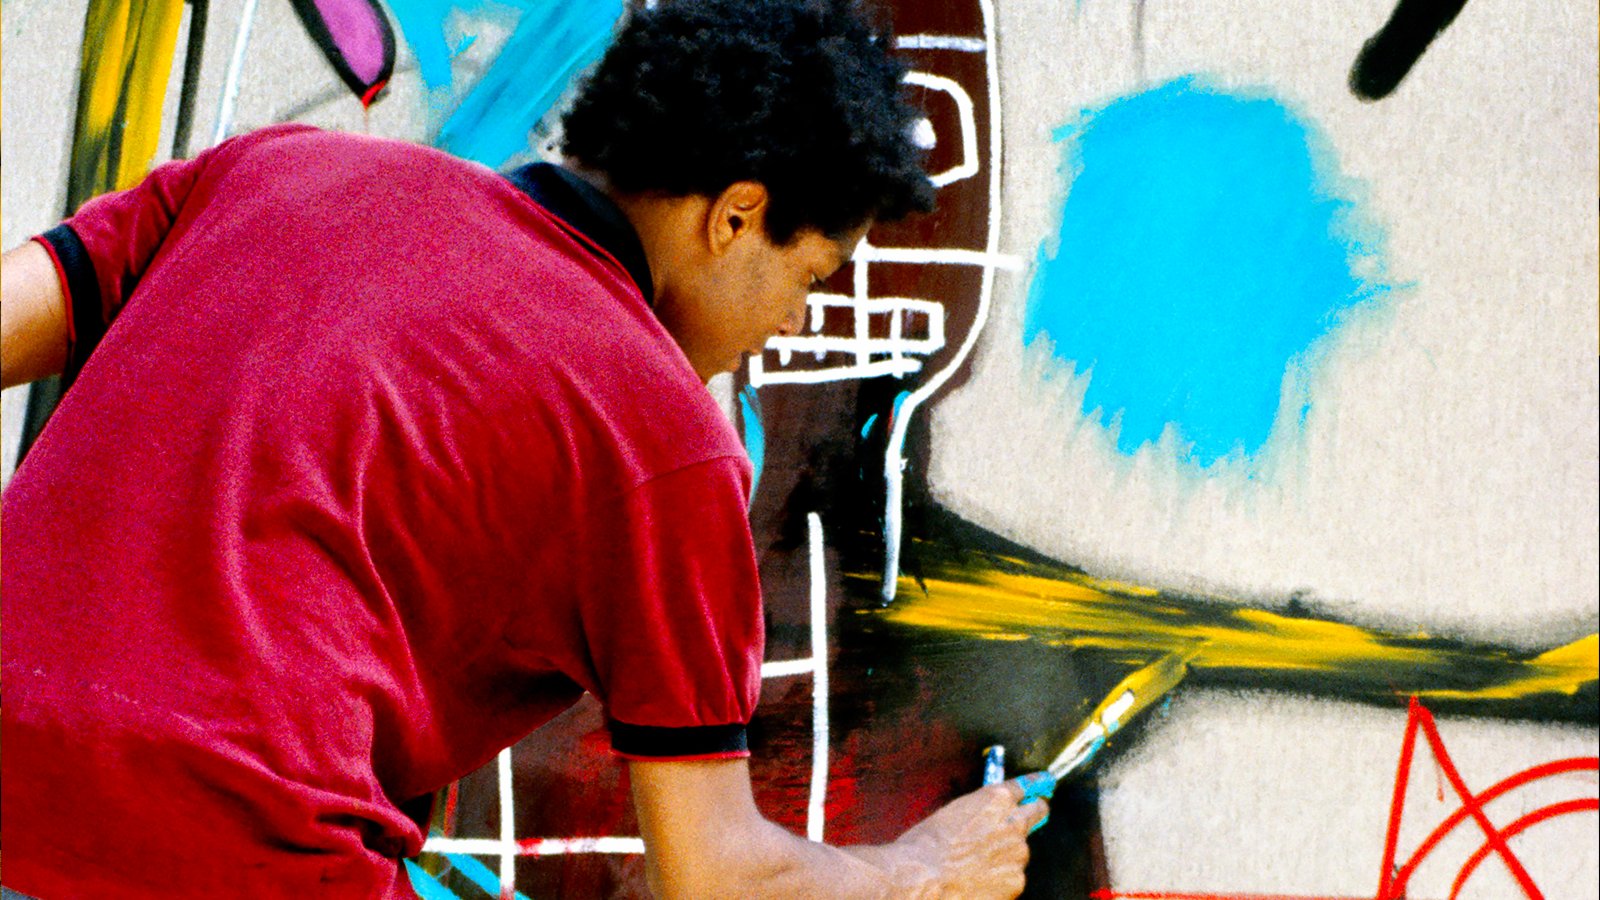 basquiat.png?resize=412,232 - Exposition “Jean-Michel Basquiat”, jusqu'au 14 janvier 2019 à la Fondation Louis Vuitton